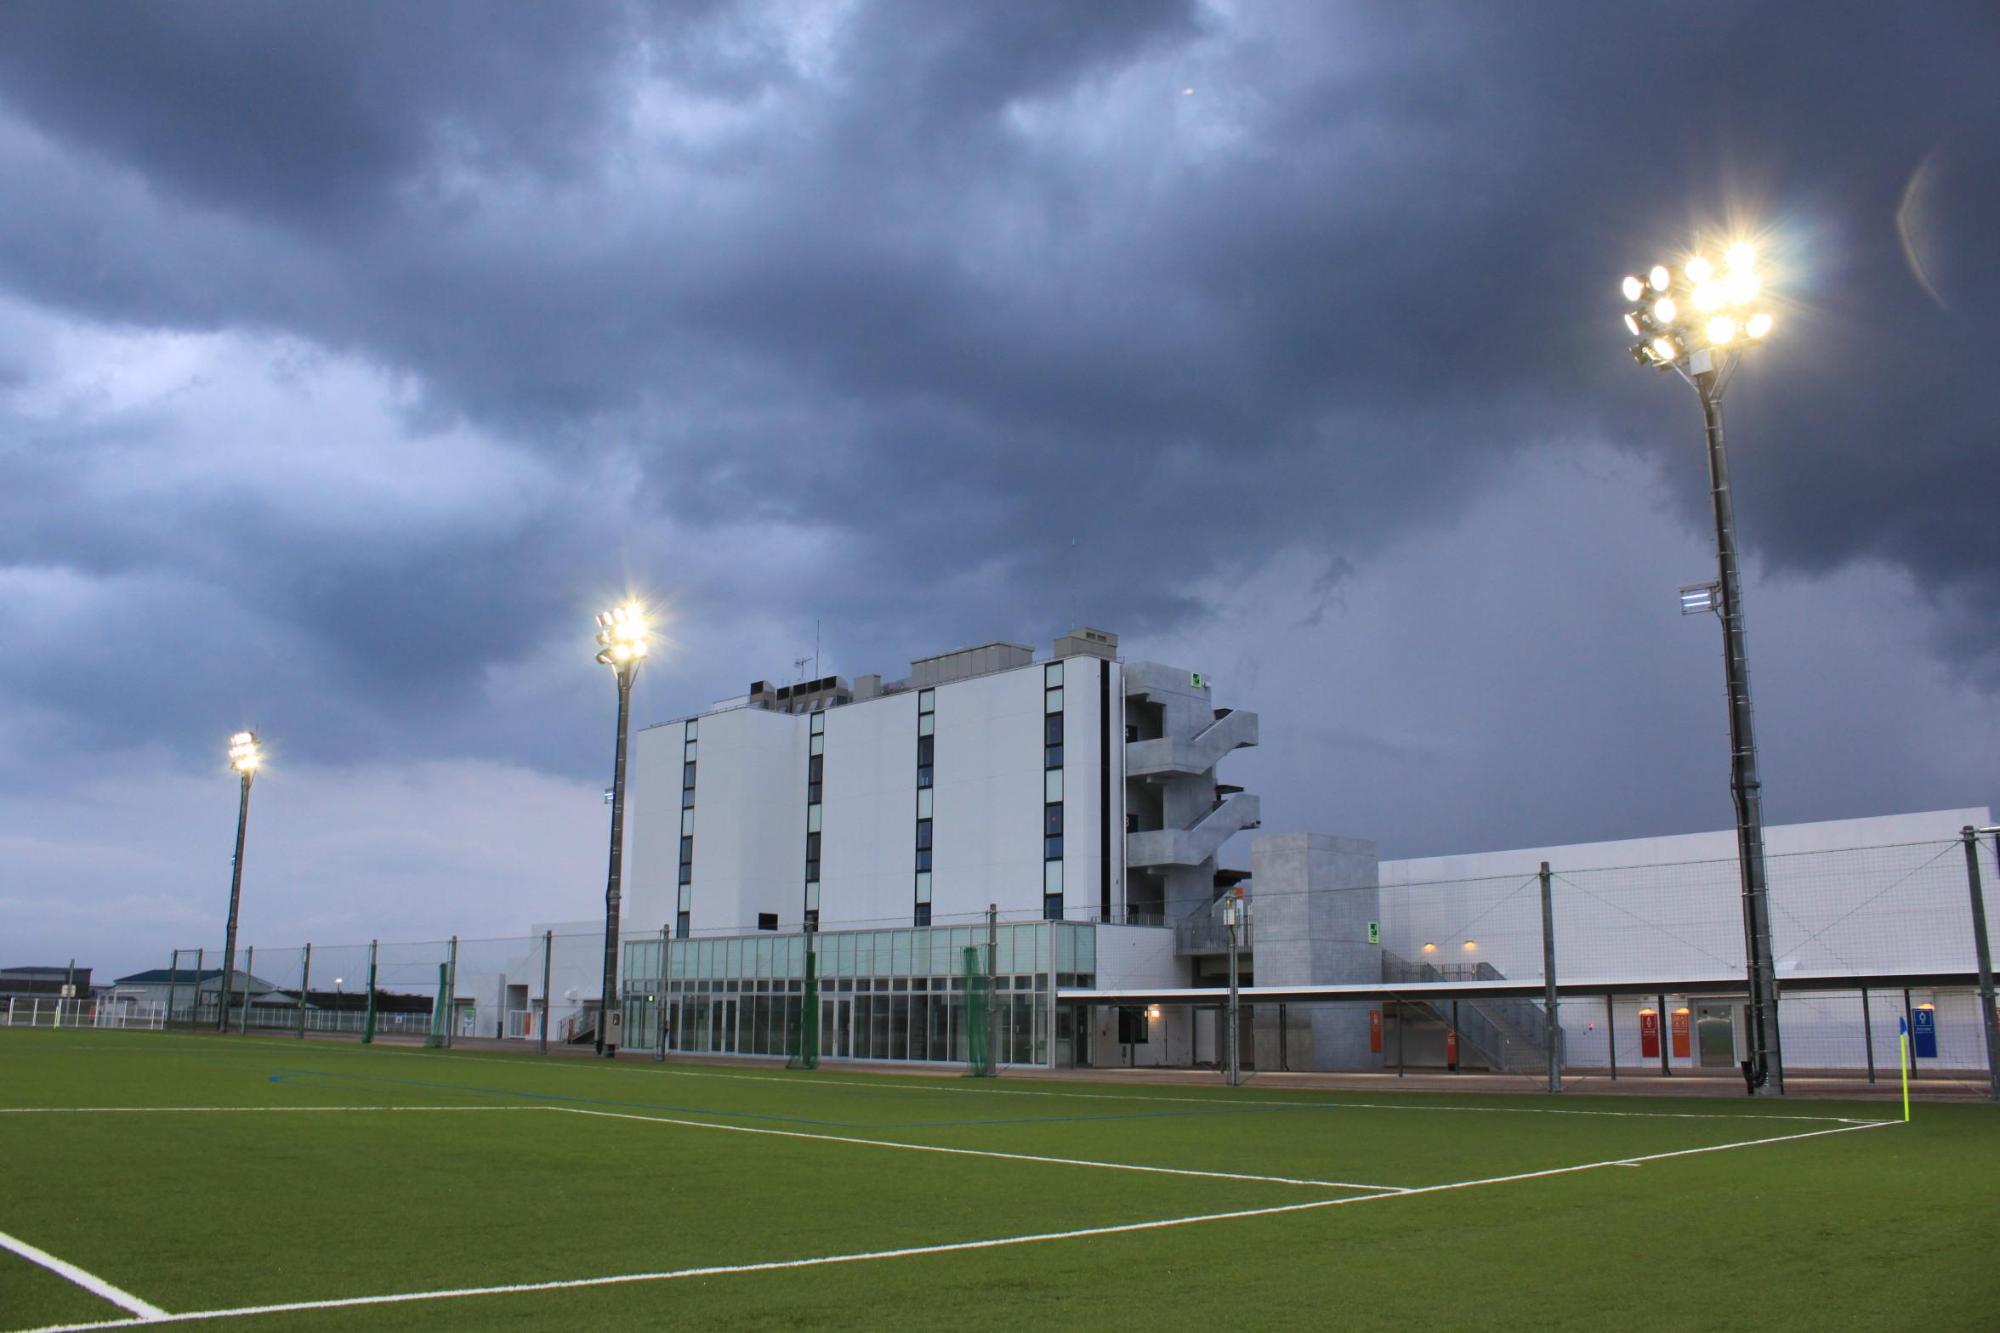 雲が垂れ込め、照明灯が明るく点灯している人工芝球技場のピッチの低い角度からの写真